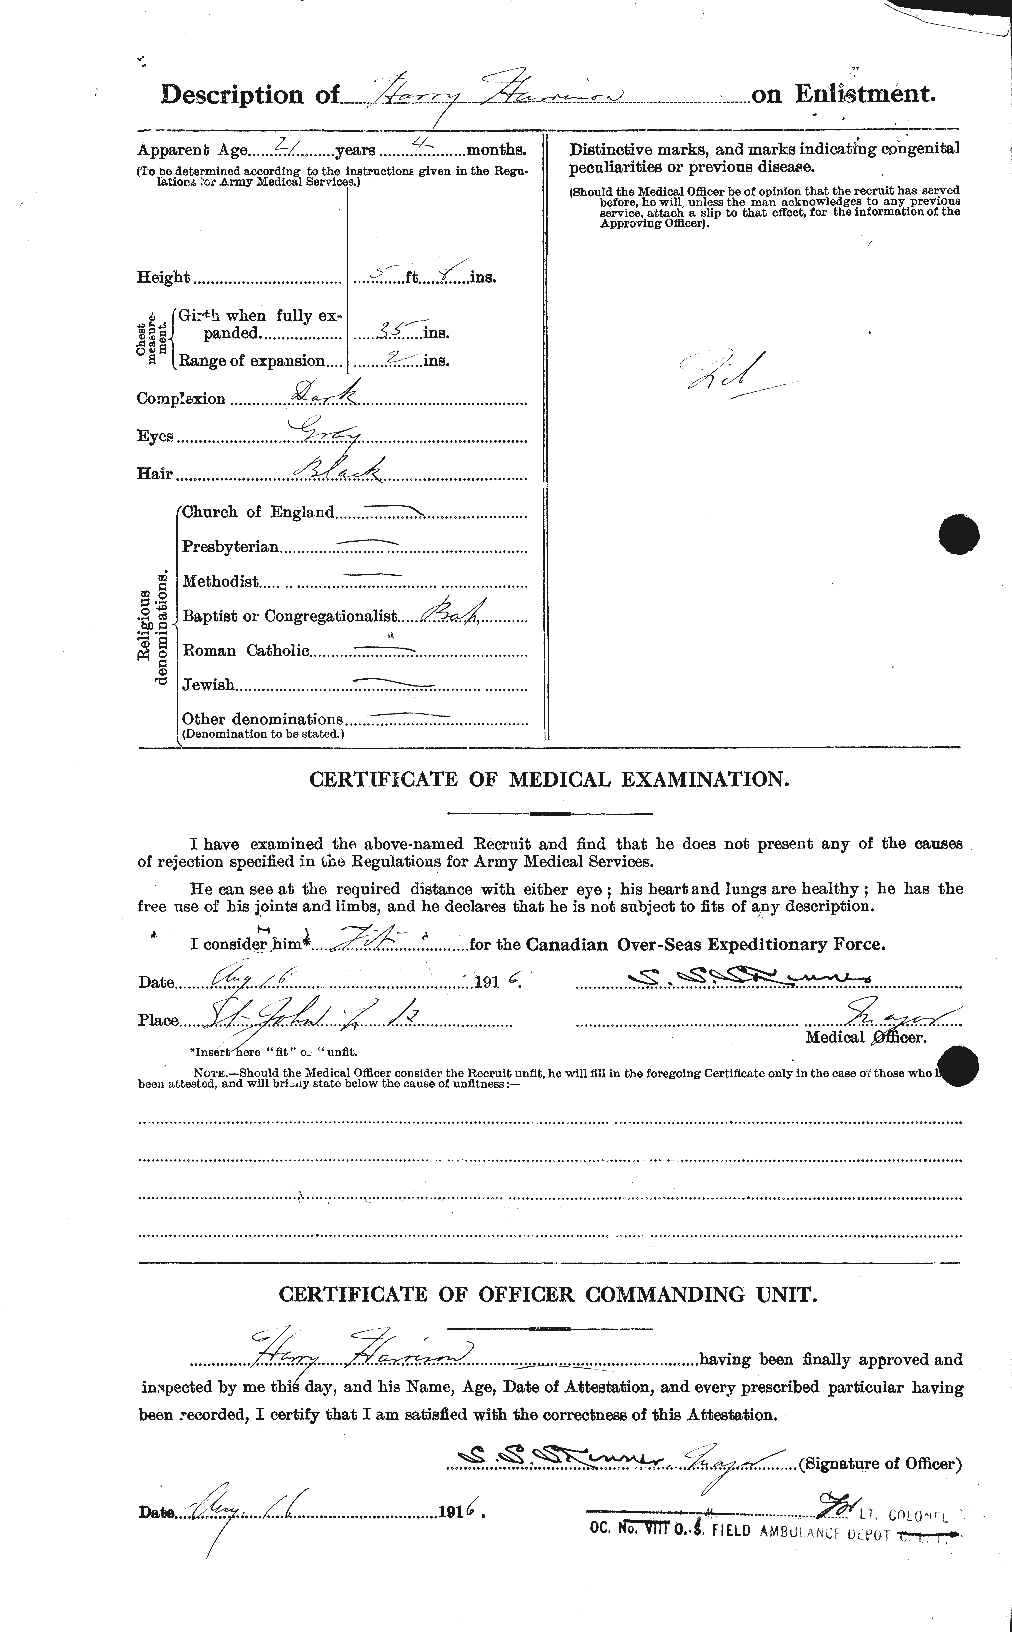 Dossiers du Personnel de la Première Guerre mondiale - CEC 380496b